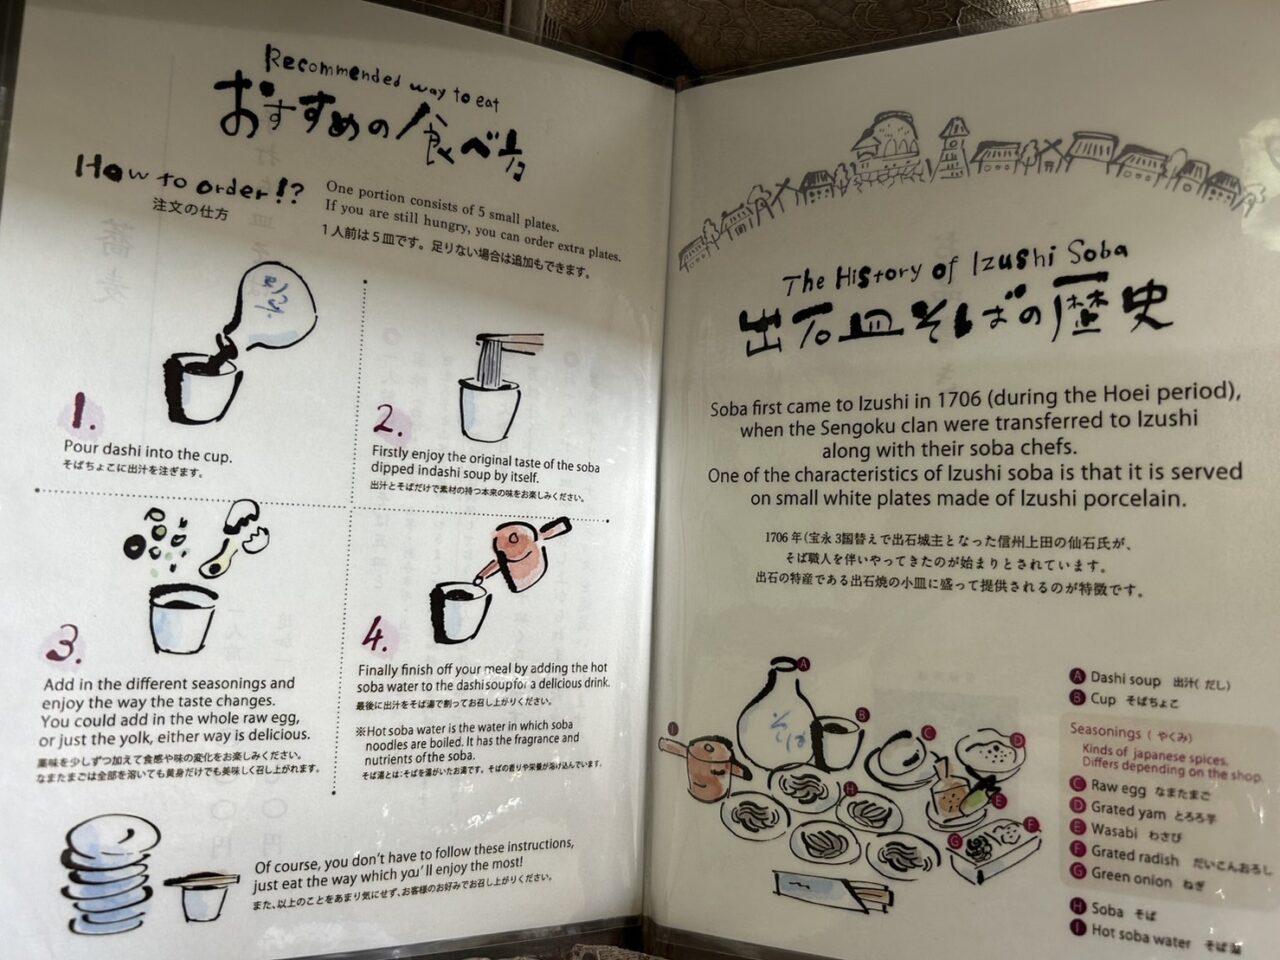 兵庫県豊岡市ミシュランビブグルマンに掲載された出石手打ち皿そば「甚兵衛」のおすすめの食べ方